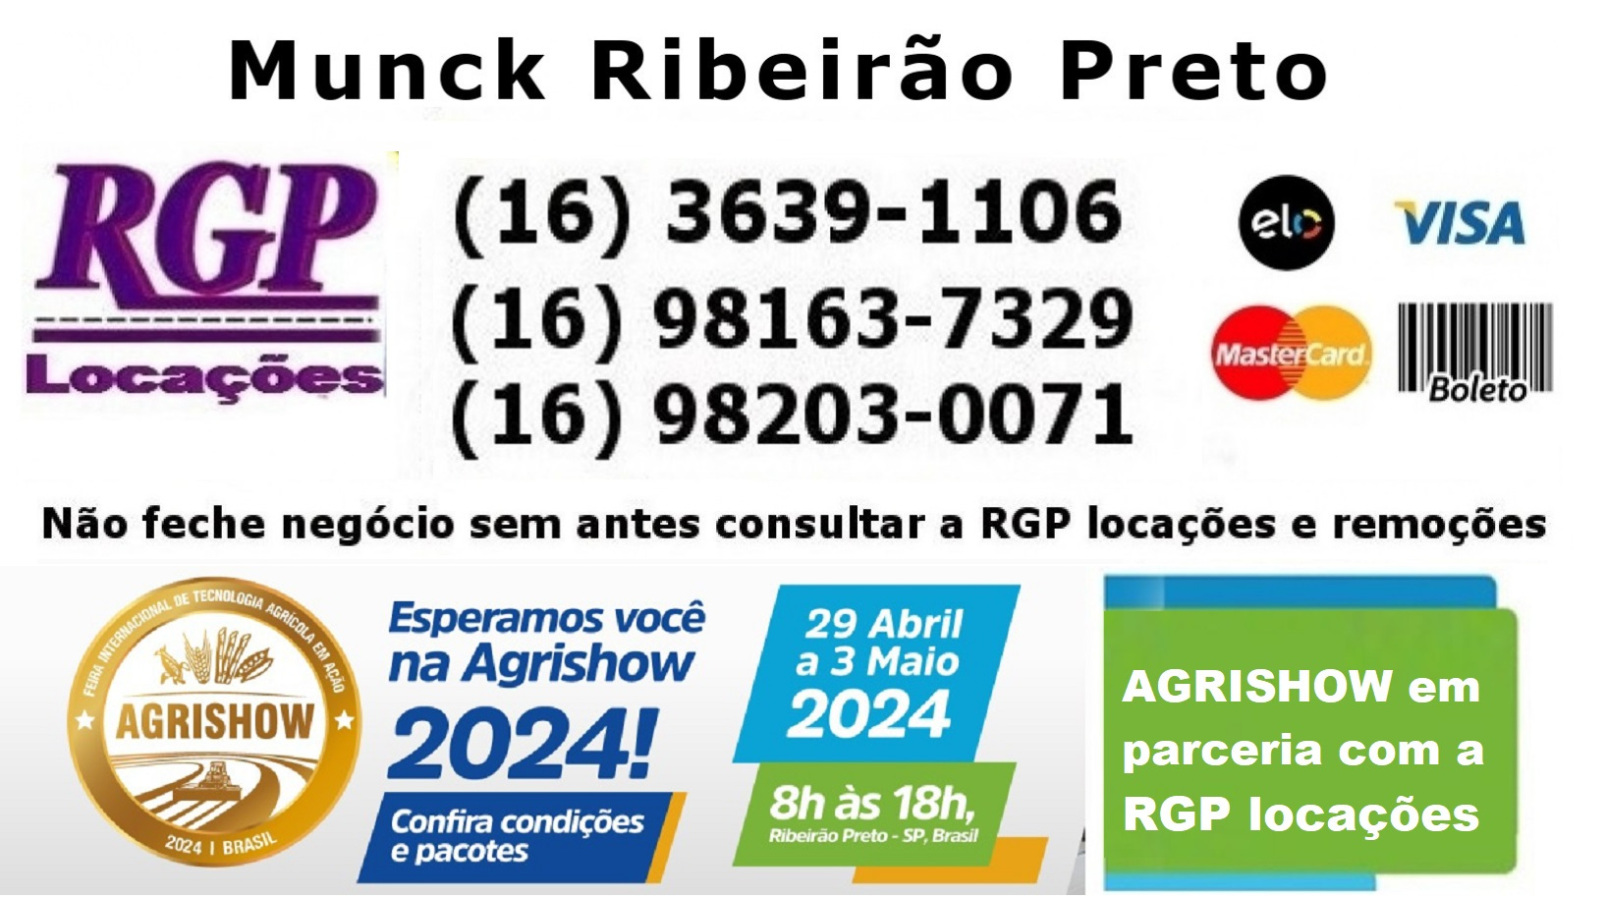  Munck Ribeirão Preto, munck em Ribeirão Preto, Ribeirão Preto munck